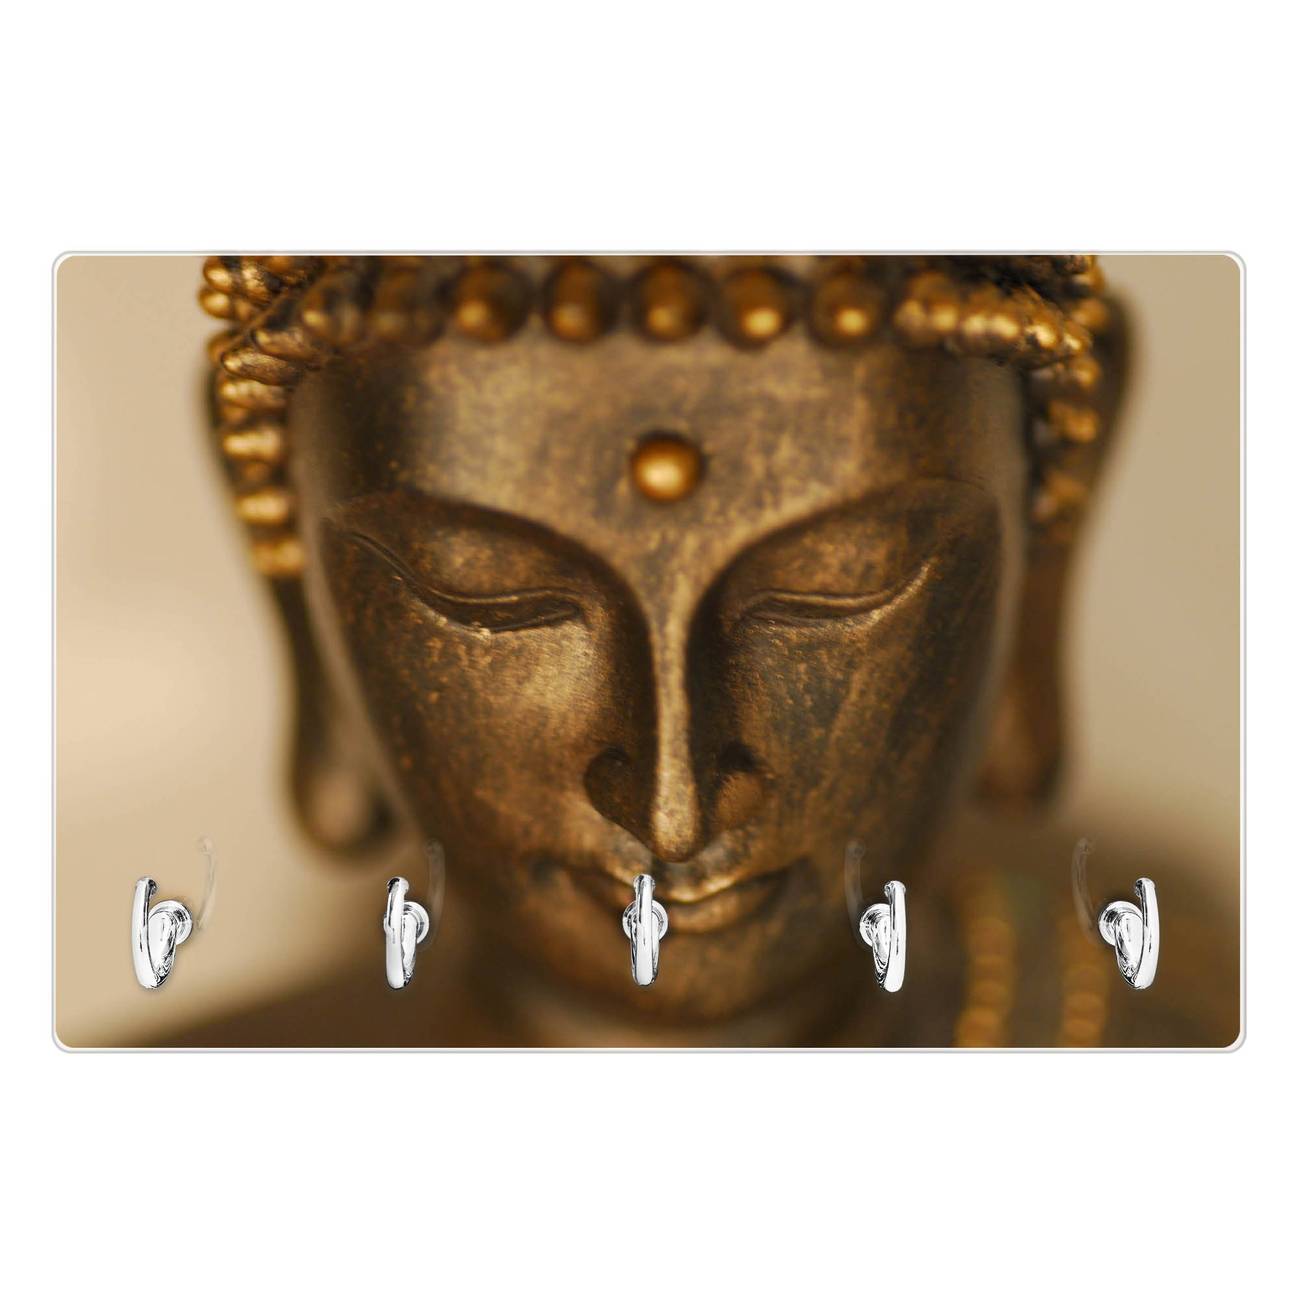 Modernes Schlüsselbrett aus Glas von banjado, Schlüsselboard 30cm x 20cm mit 5 Haken, Schlüsselleiste beschreibbar und magnetisch mit Motiv Buddha Gold